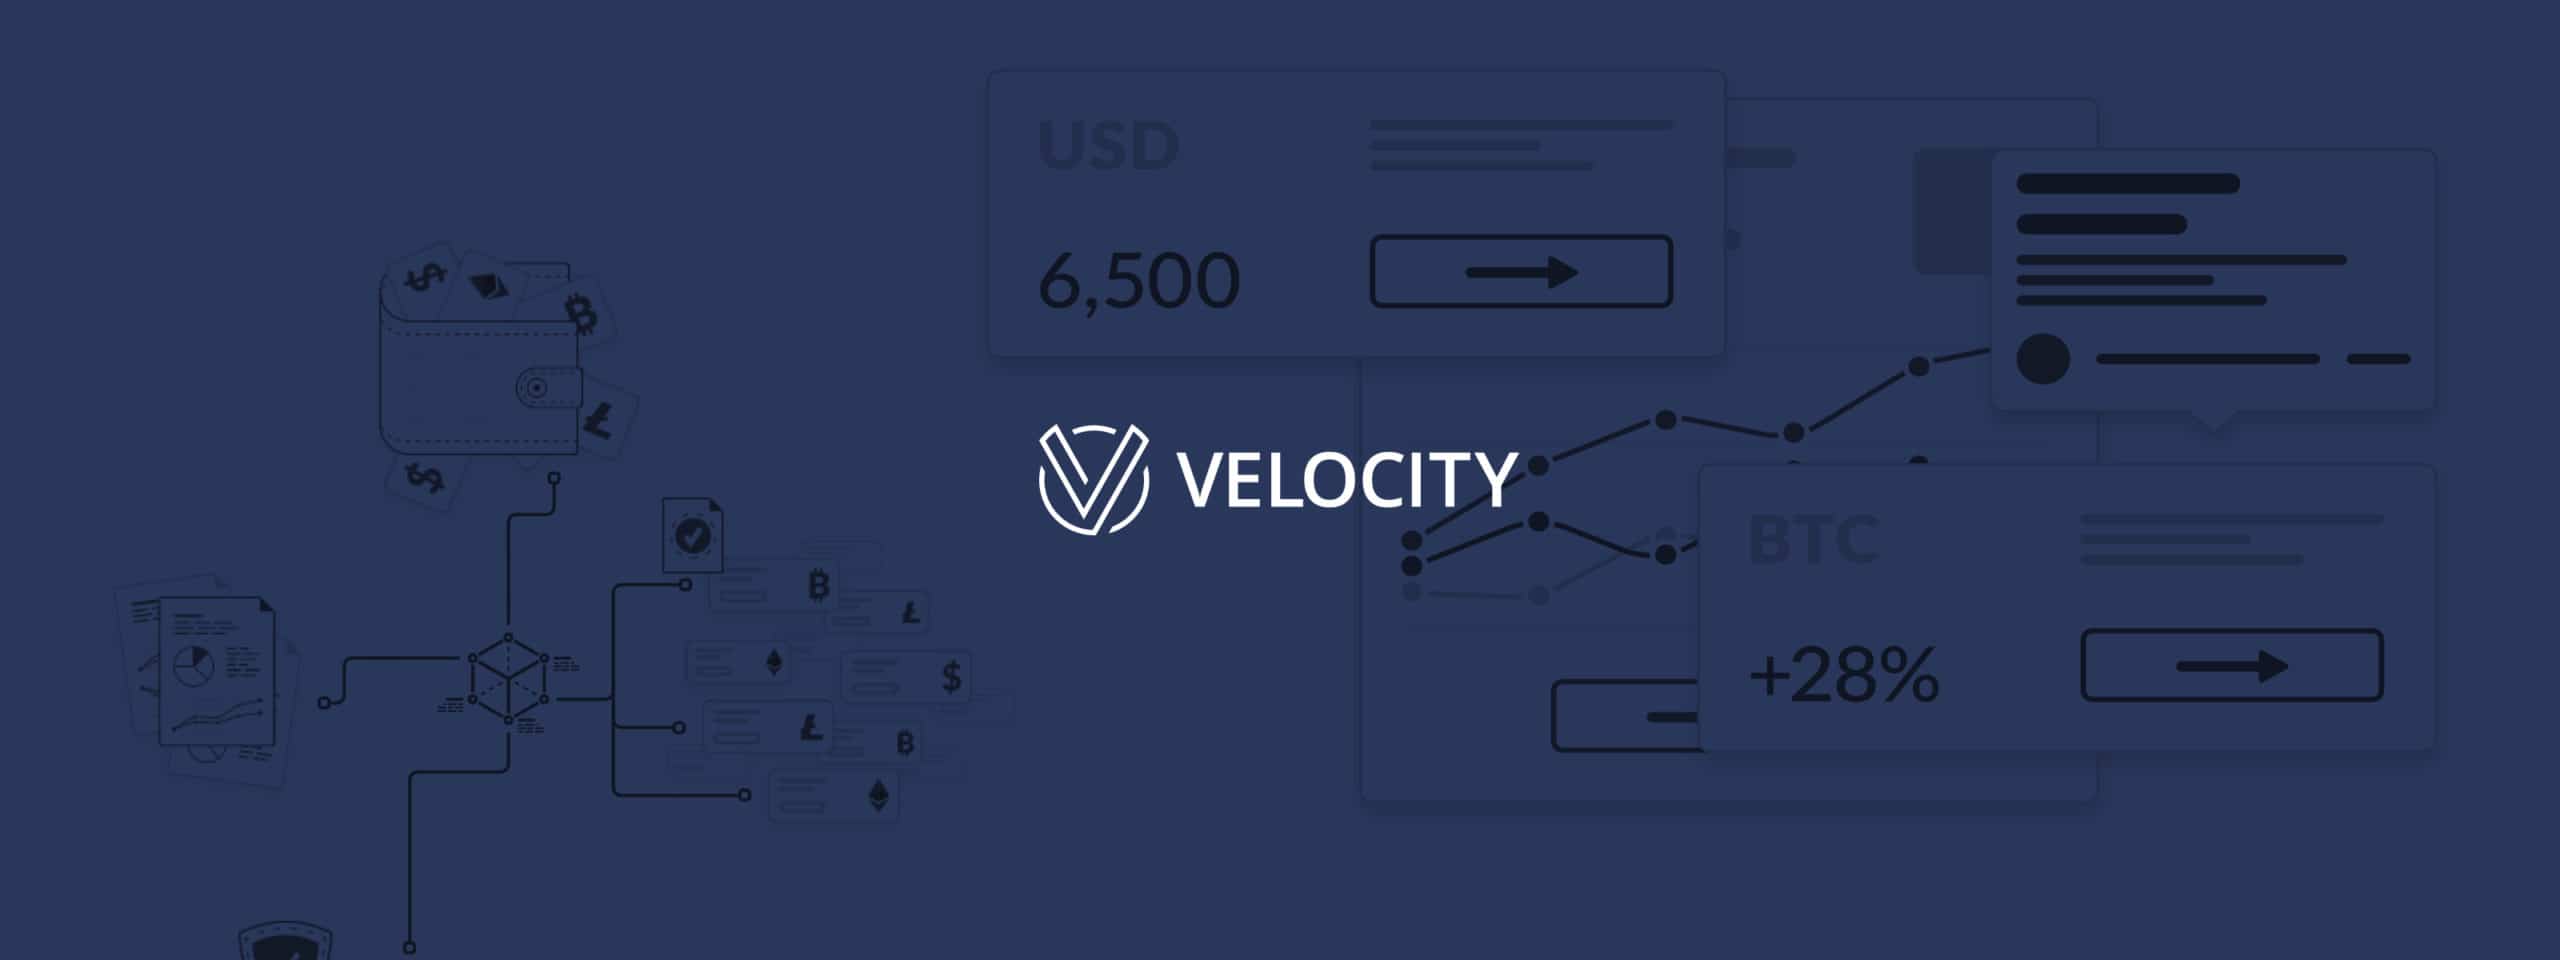 Velocity Markets logo and hero